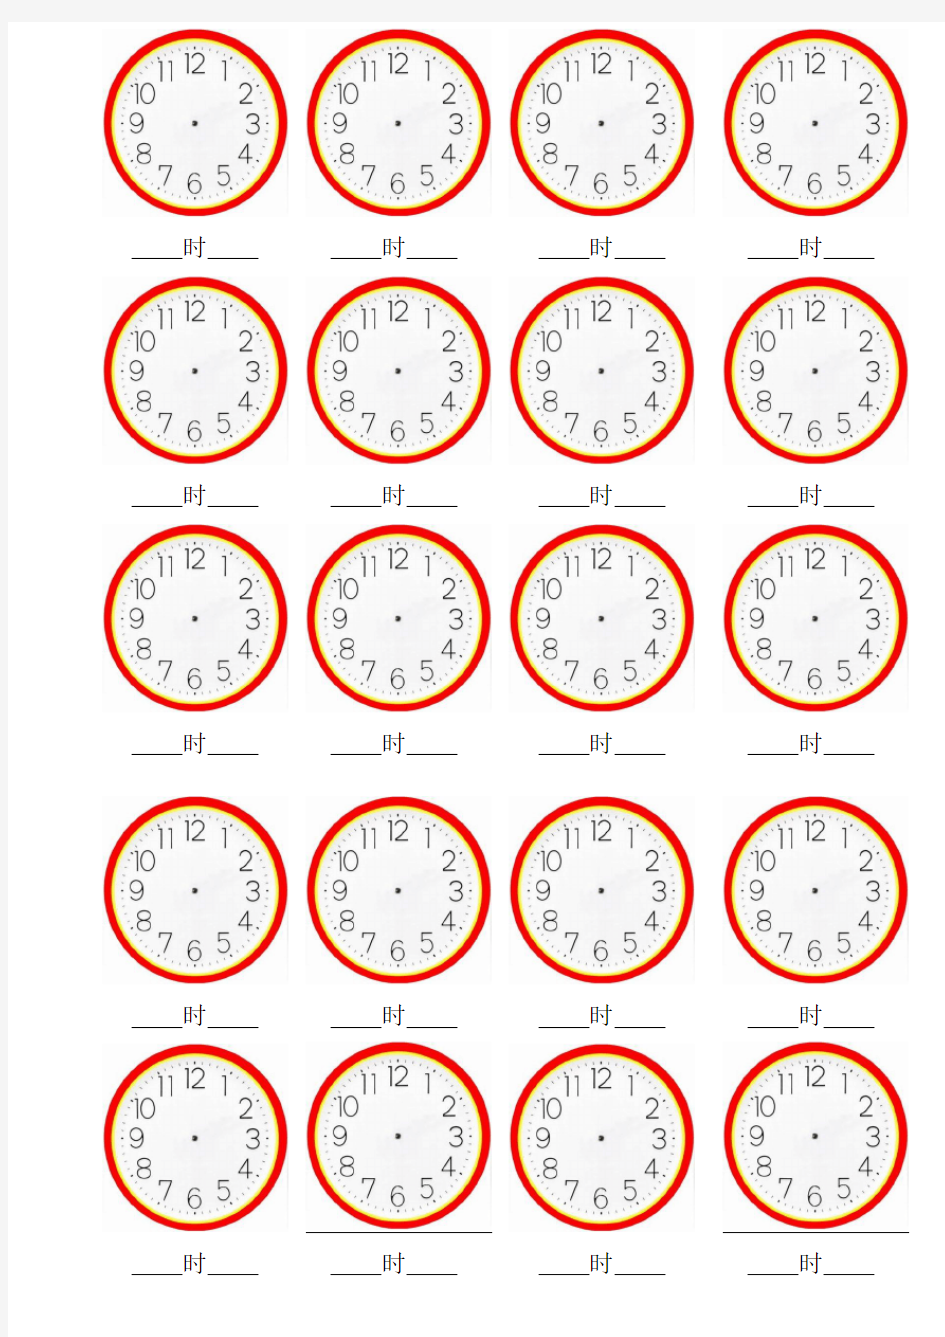 认识钟表--空白表盘图(每张20图)